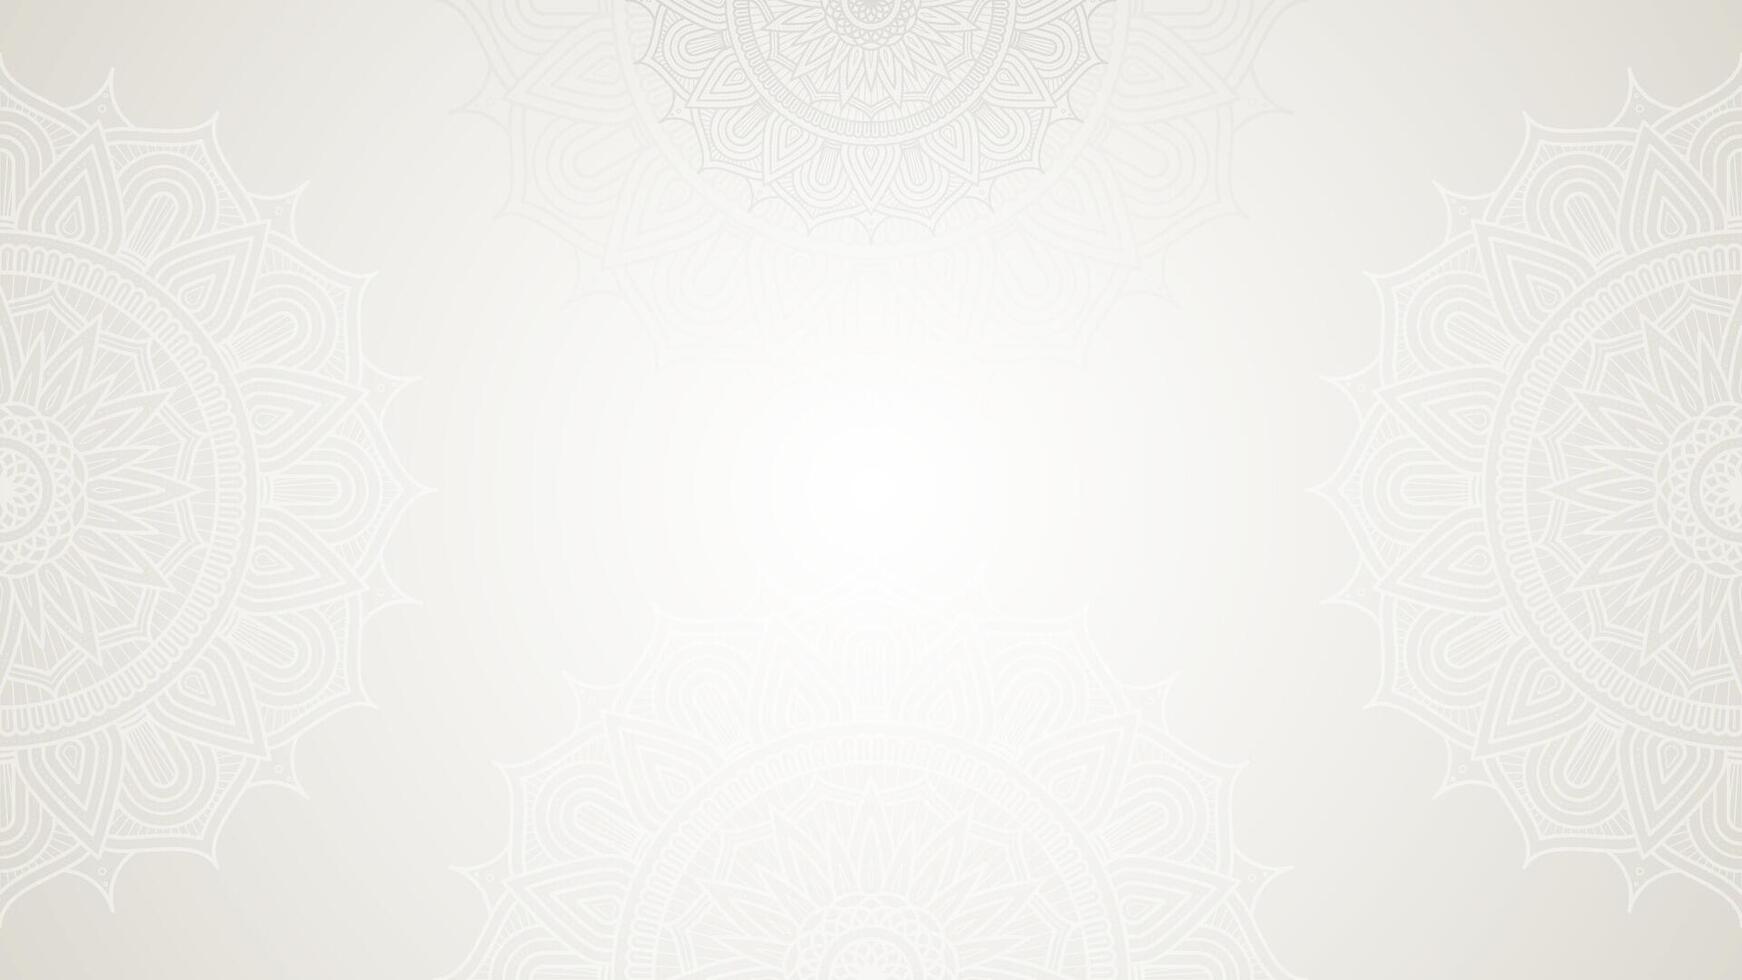 Elegant White Decorated With Detailed Geometric Mandala Border Art Blank Horizontal Vector Background